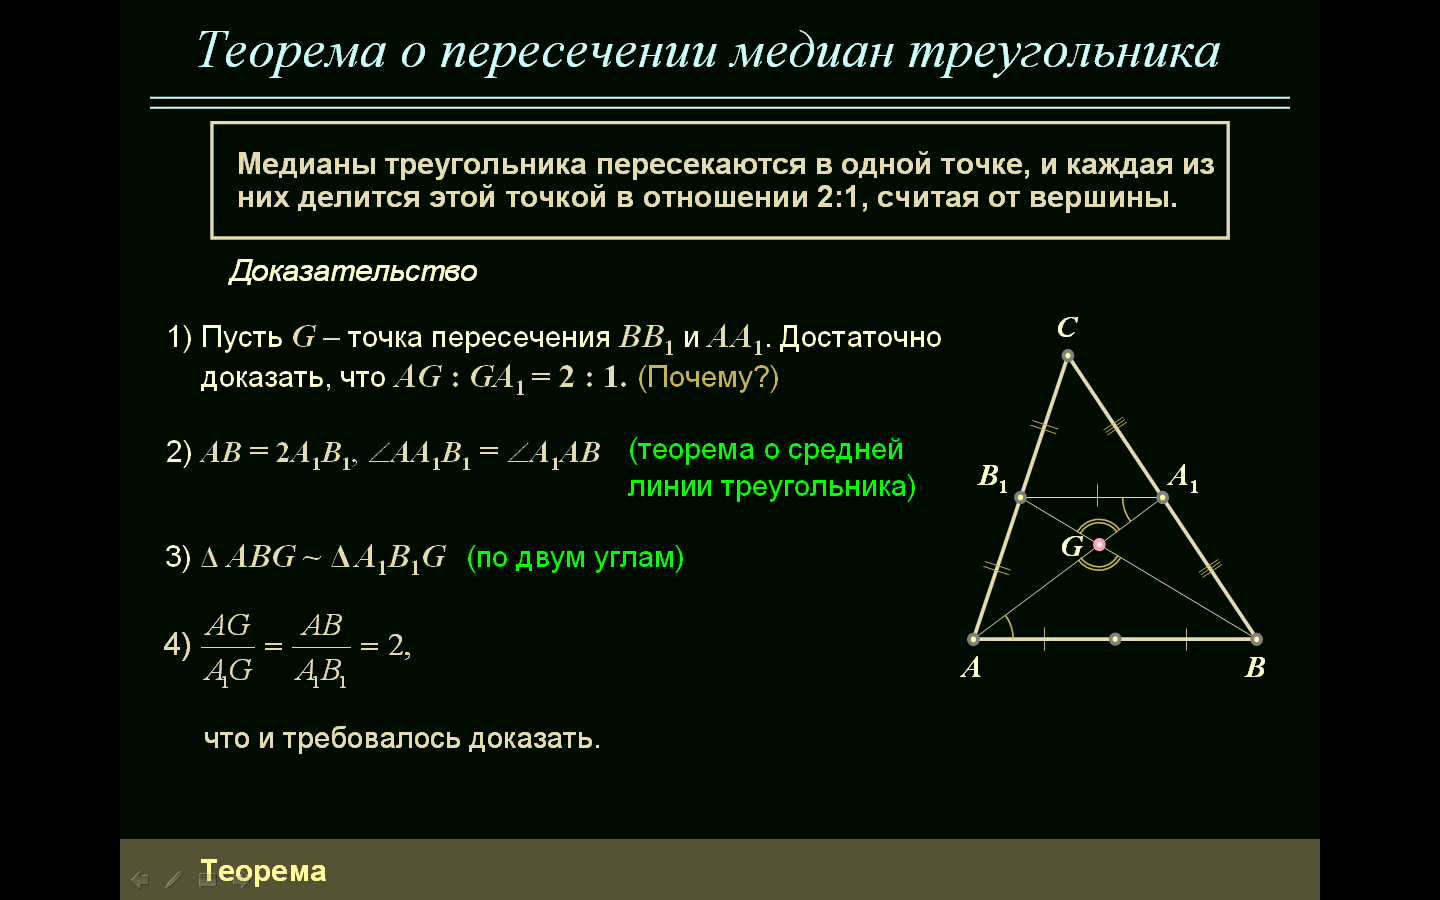 14 точек треугольника. Теорема о пересечении медиан треугольника. Теорема о пересечении медиан треугольника доказательство. Теорема о точке пересечения медиан треугольника доказательство. Теорема о точке пересечения медиан треугольника.